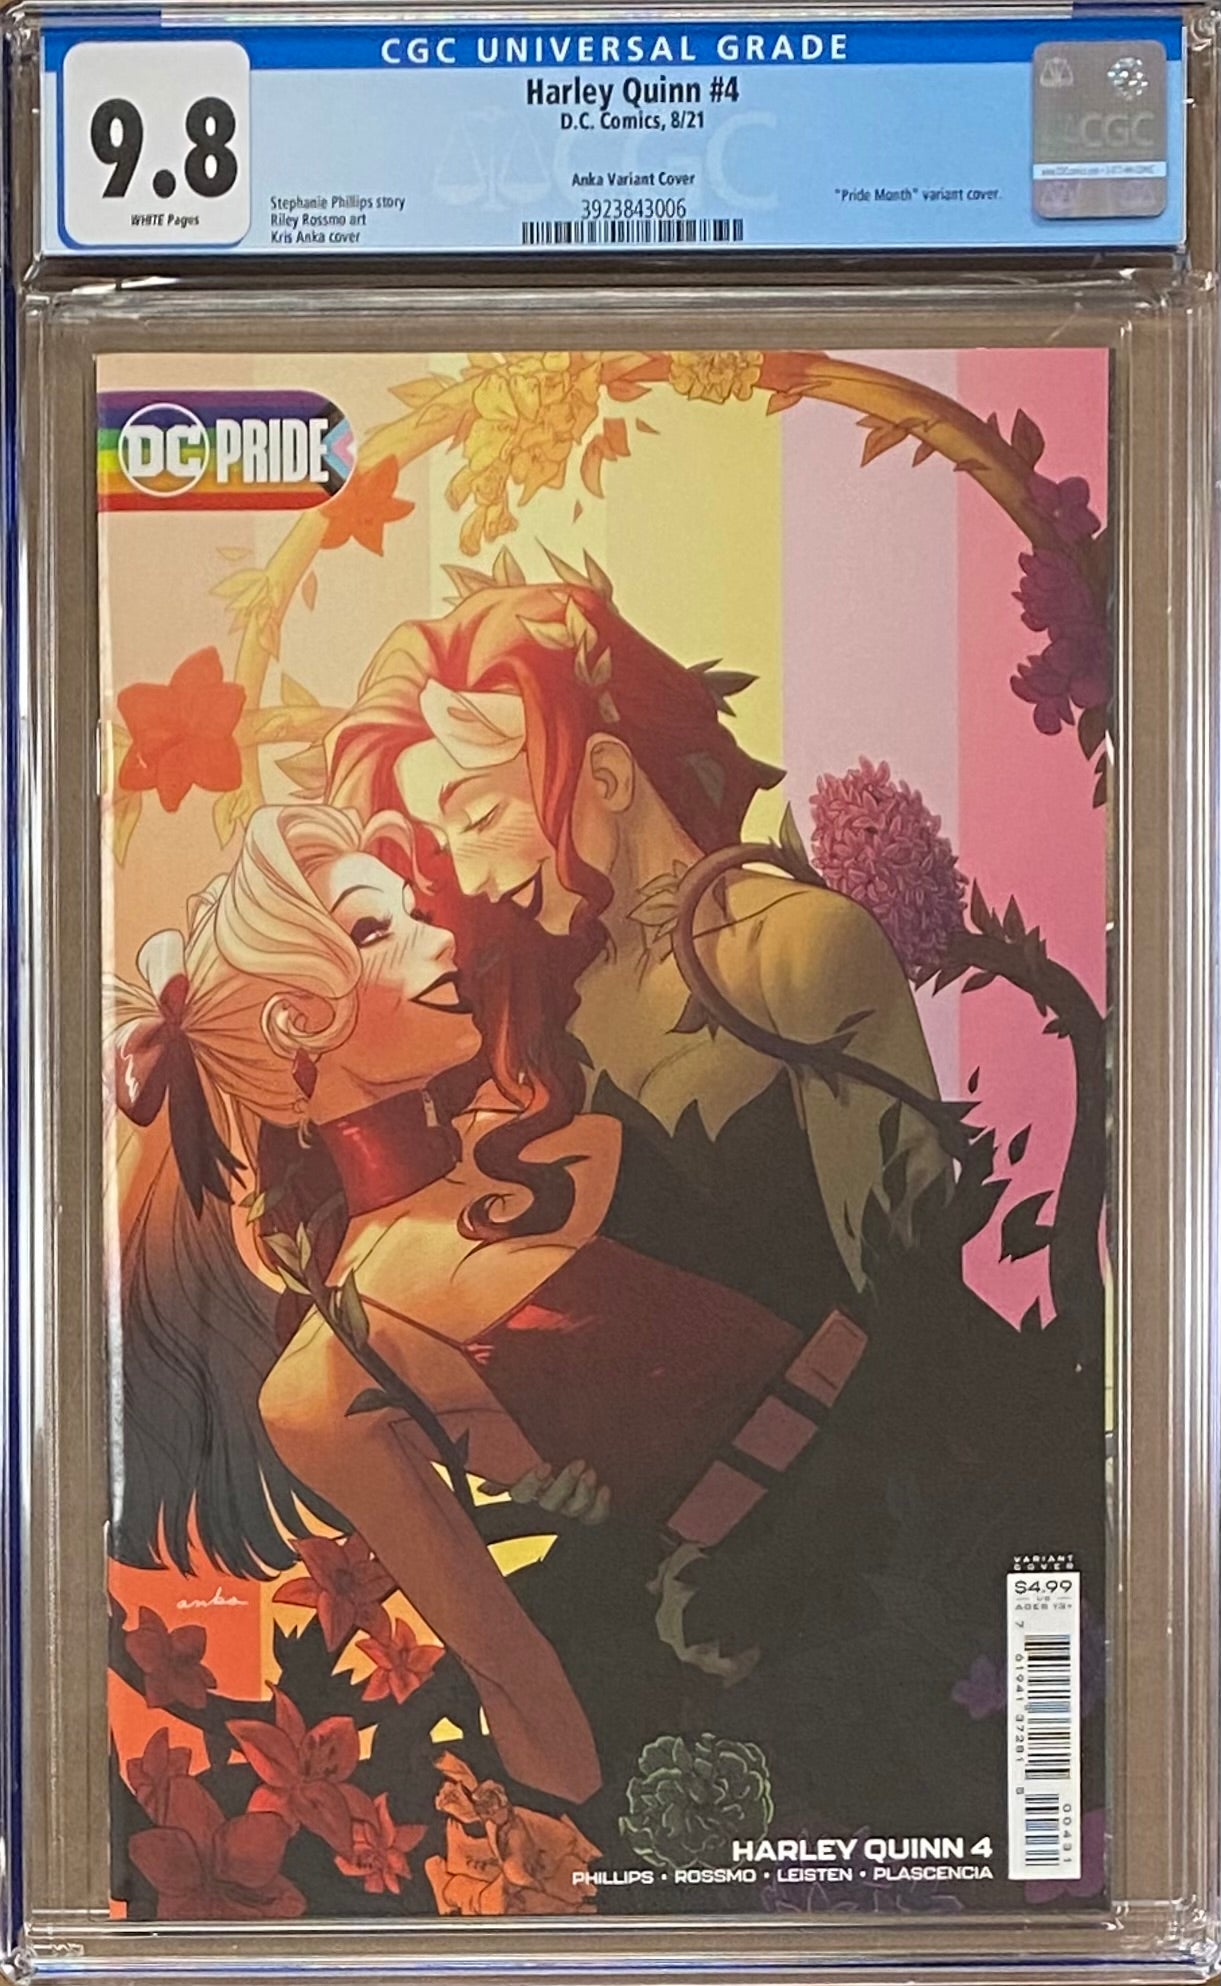 Harley Quinn #4 "Pride" Variant CGC 9.8